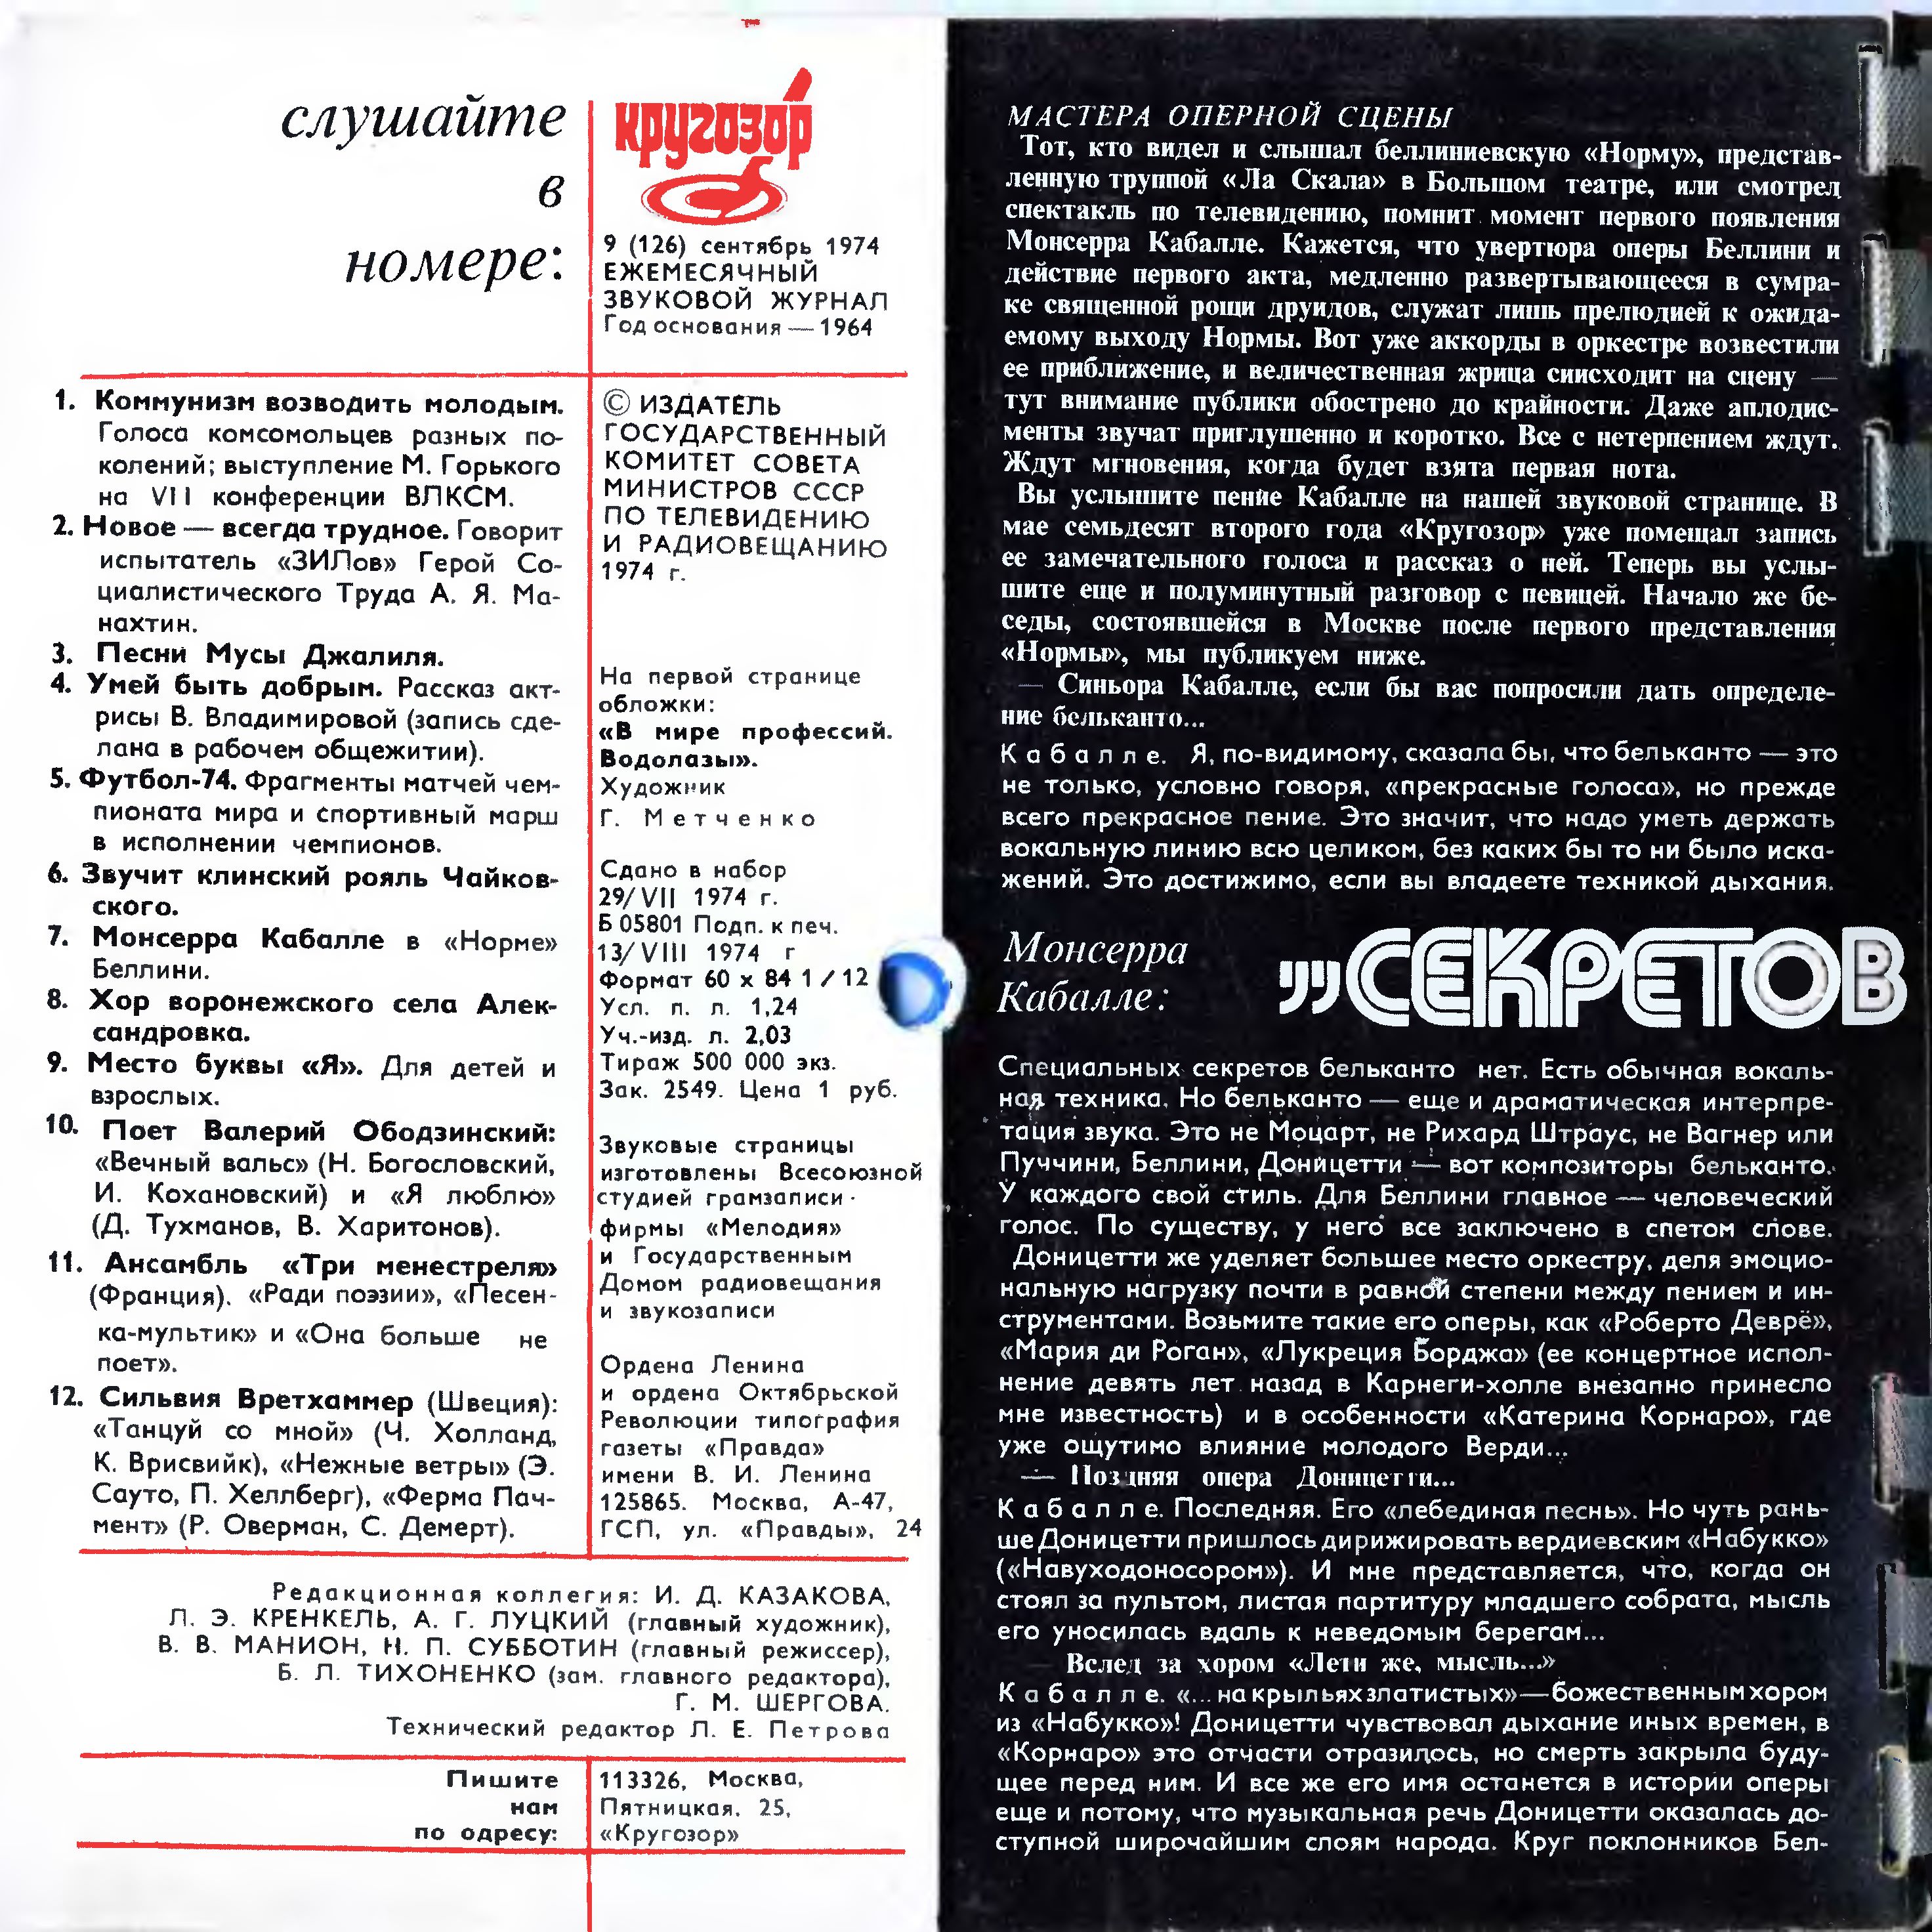 Кругозор 1974 №09